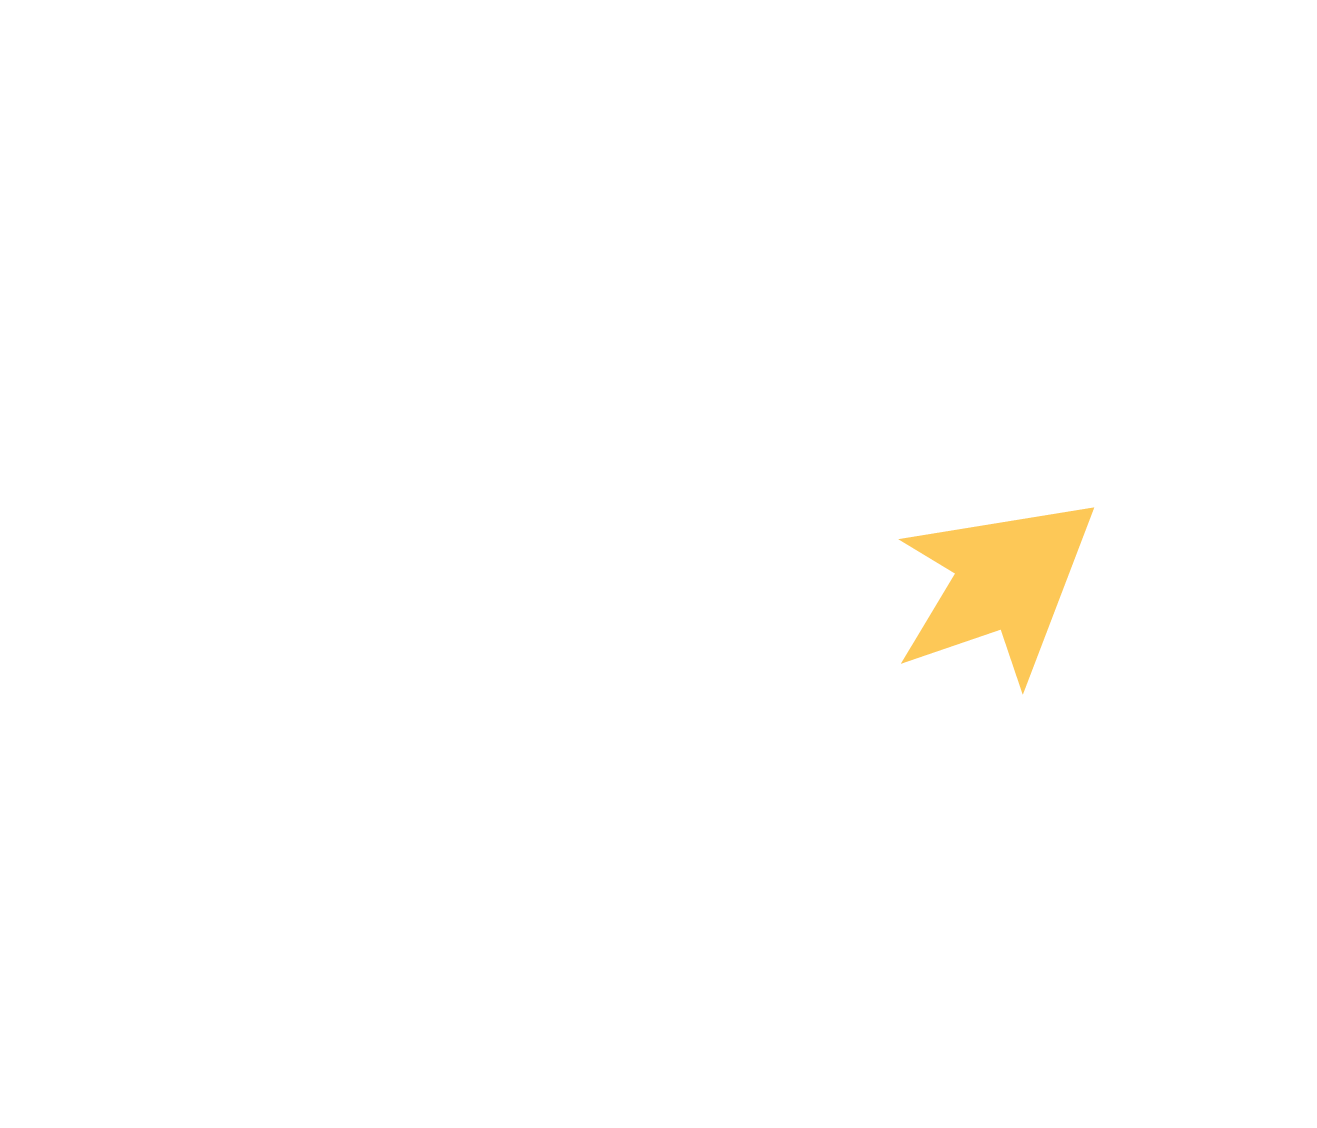 pyronet logo